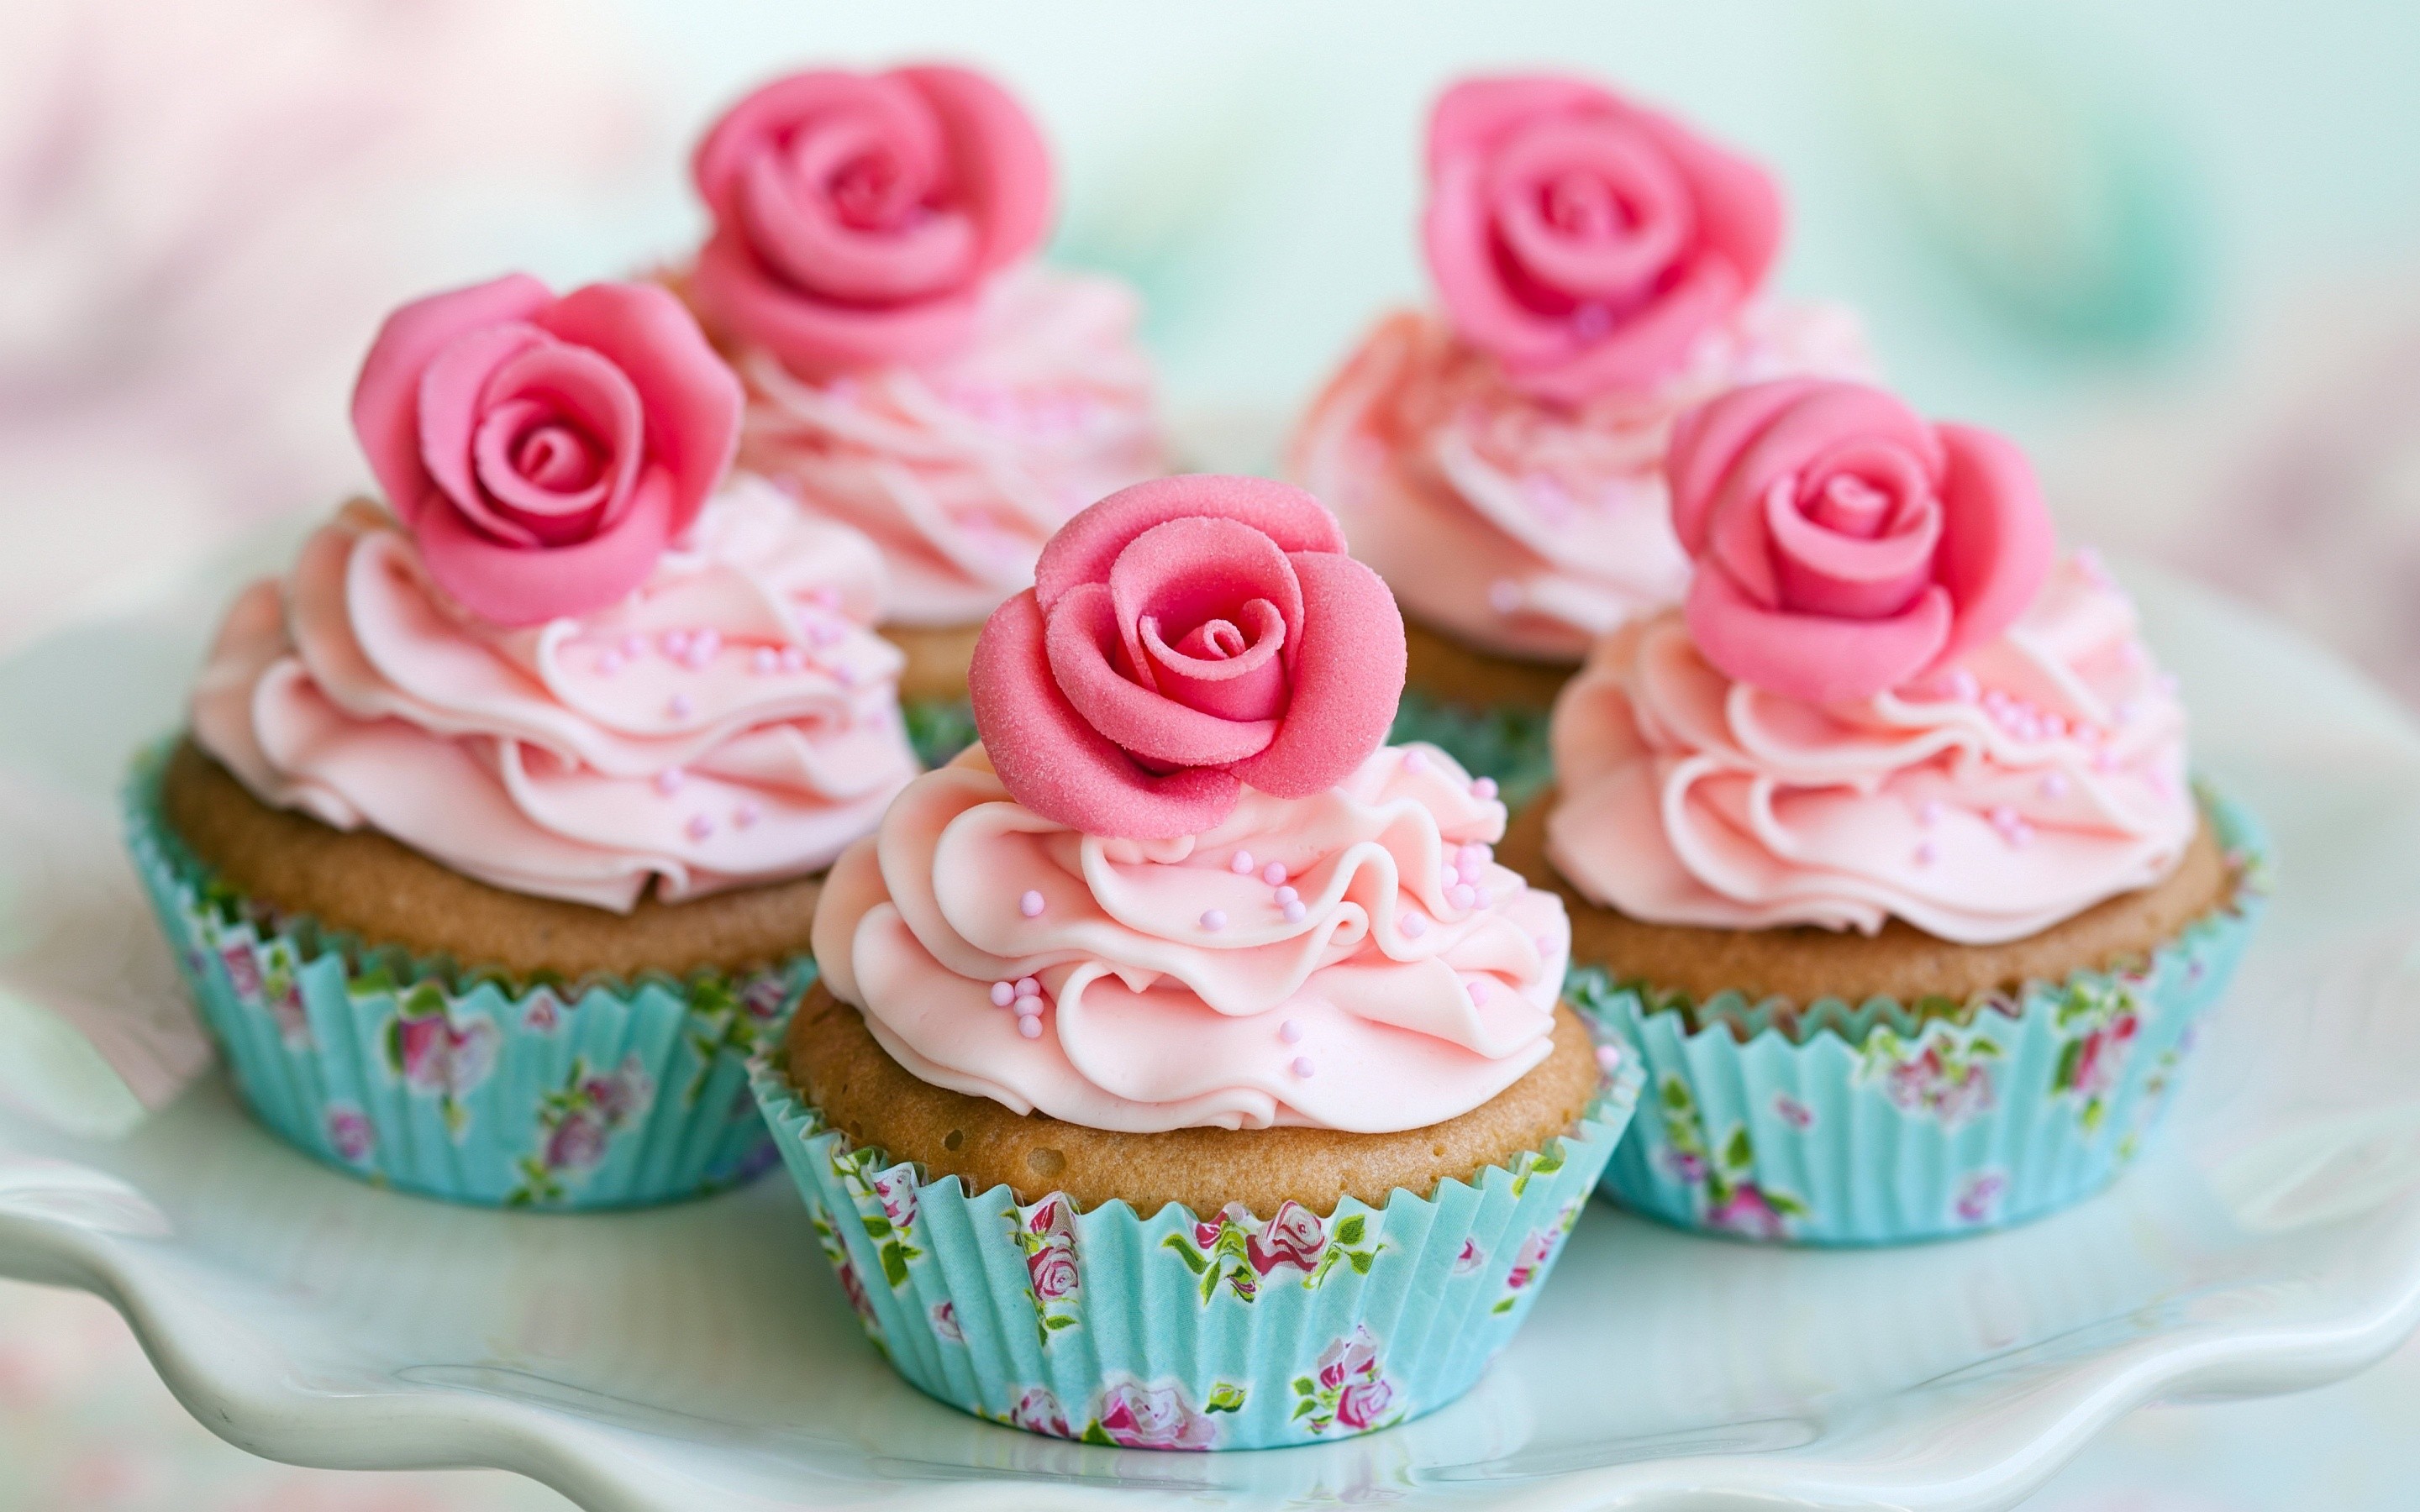 15 cupcakes recipe vegan ebook download